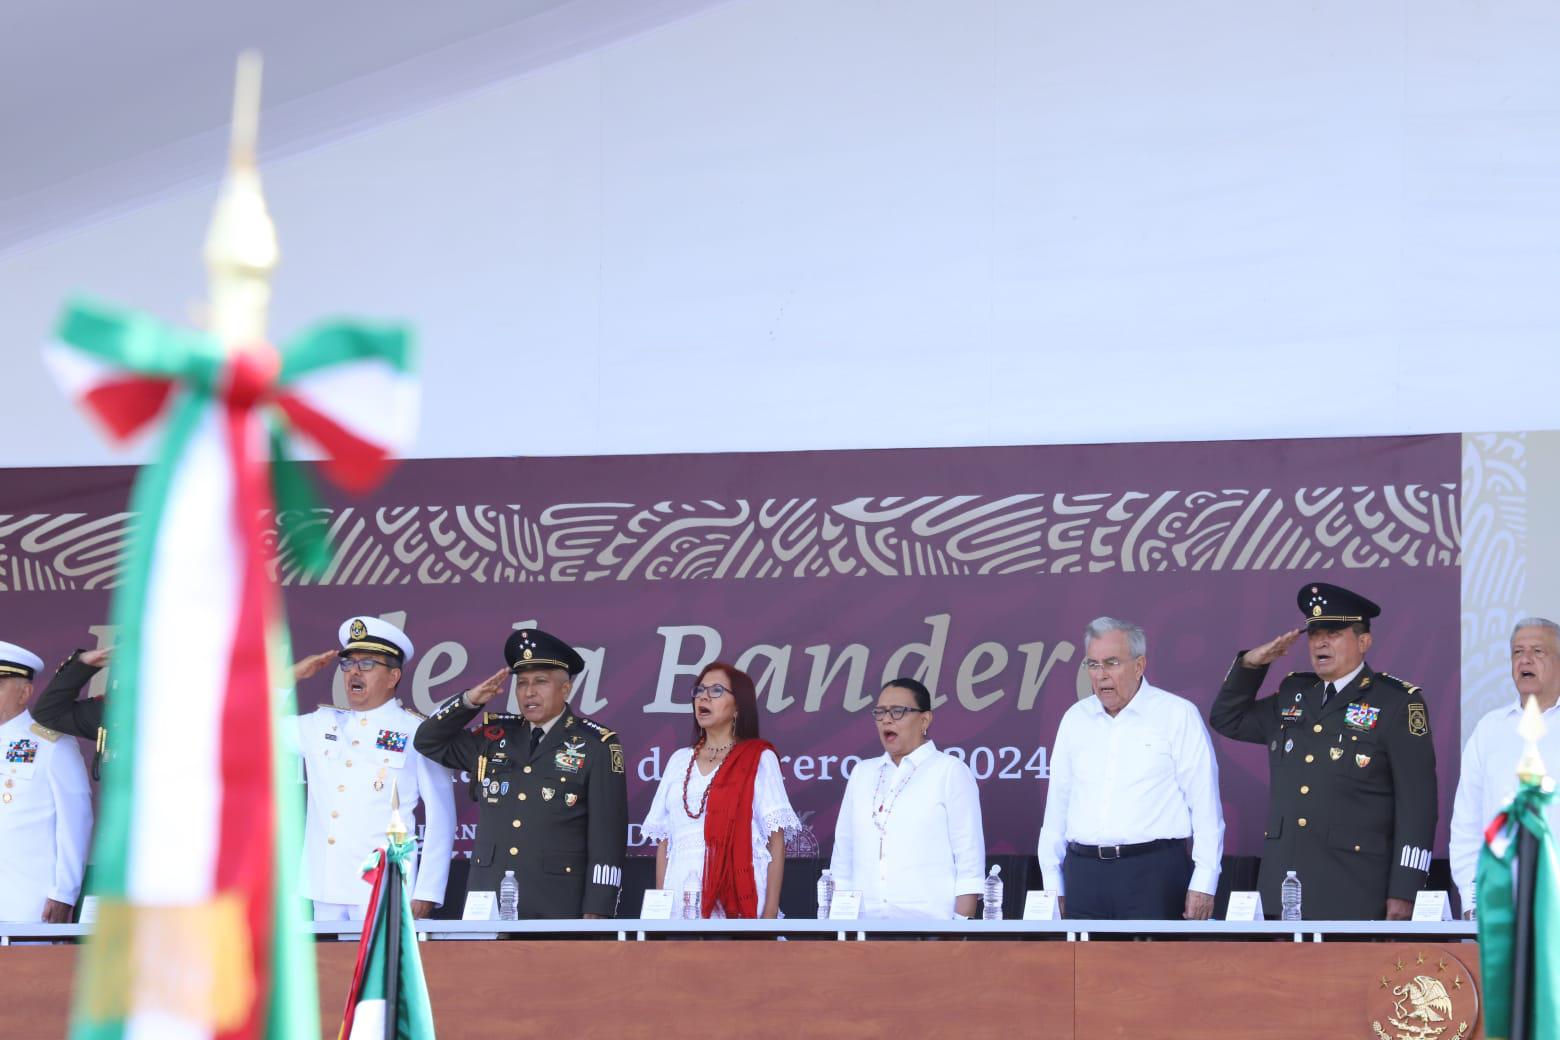 $!Encabeza AMLO celebración del Día de la Bandera en la Glorieta Sánchez Taboada de Mazatlán